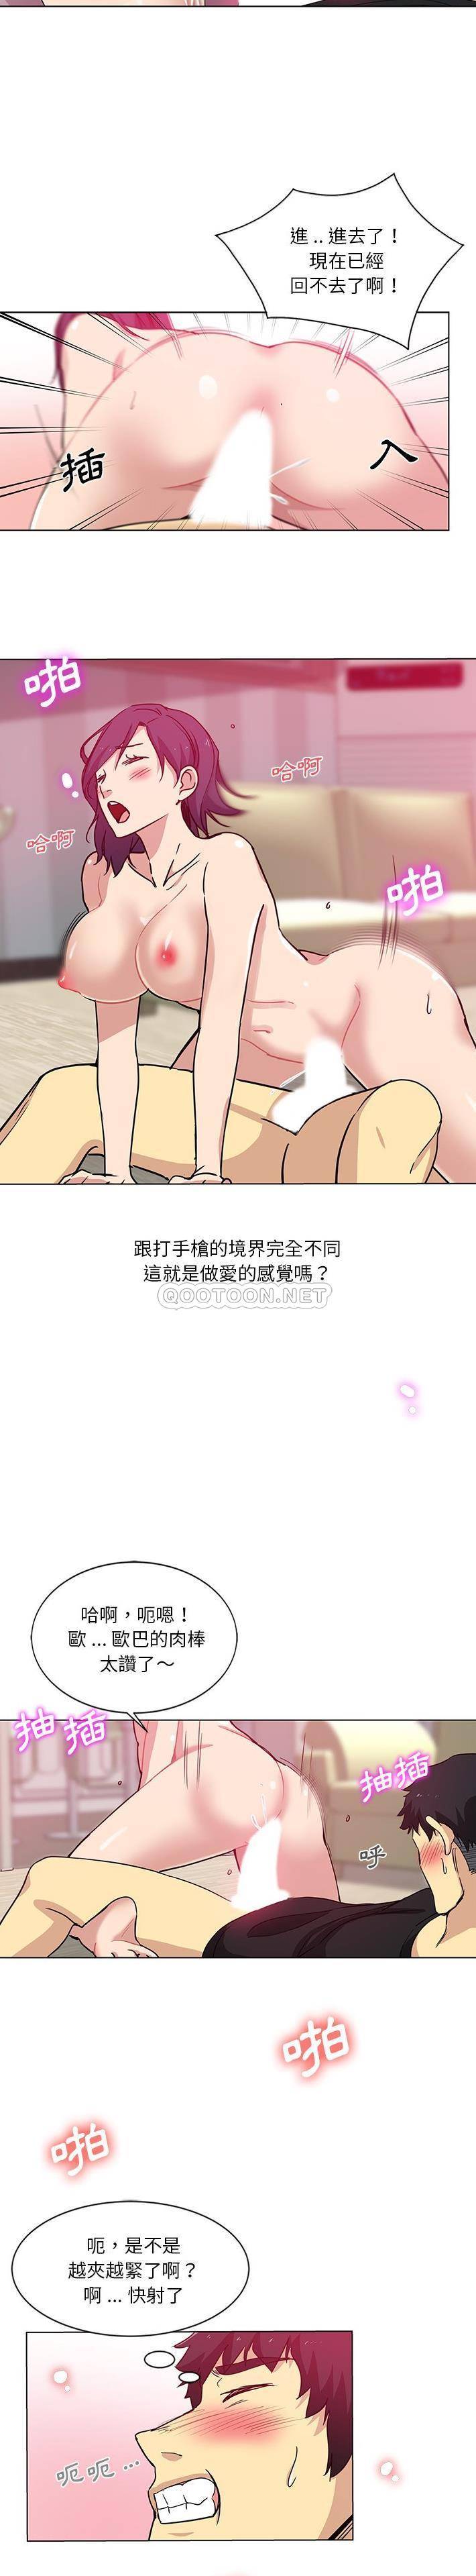 韩国污漫画 危險純友誼 第3话 6